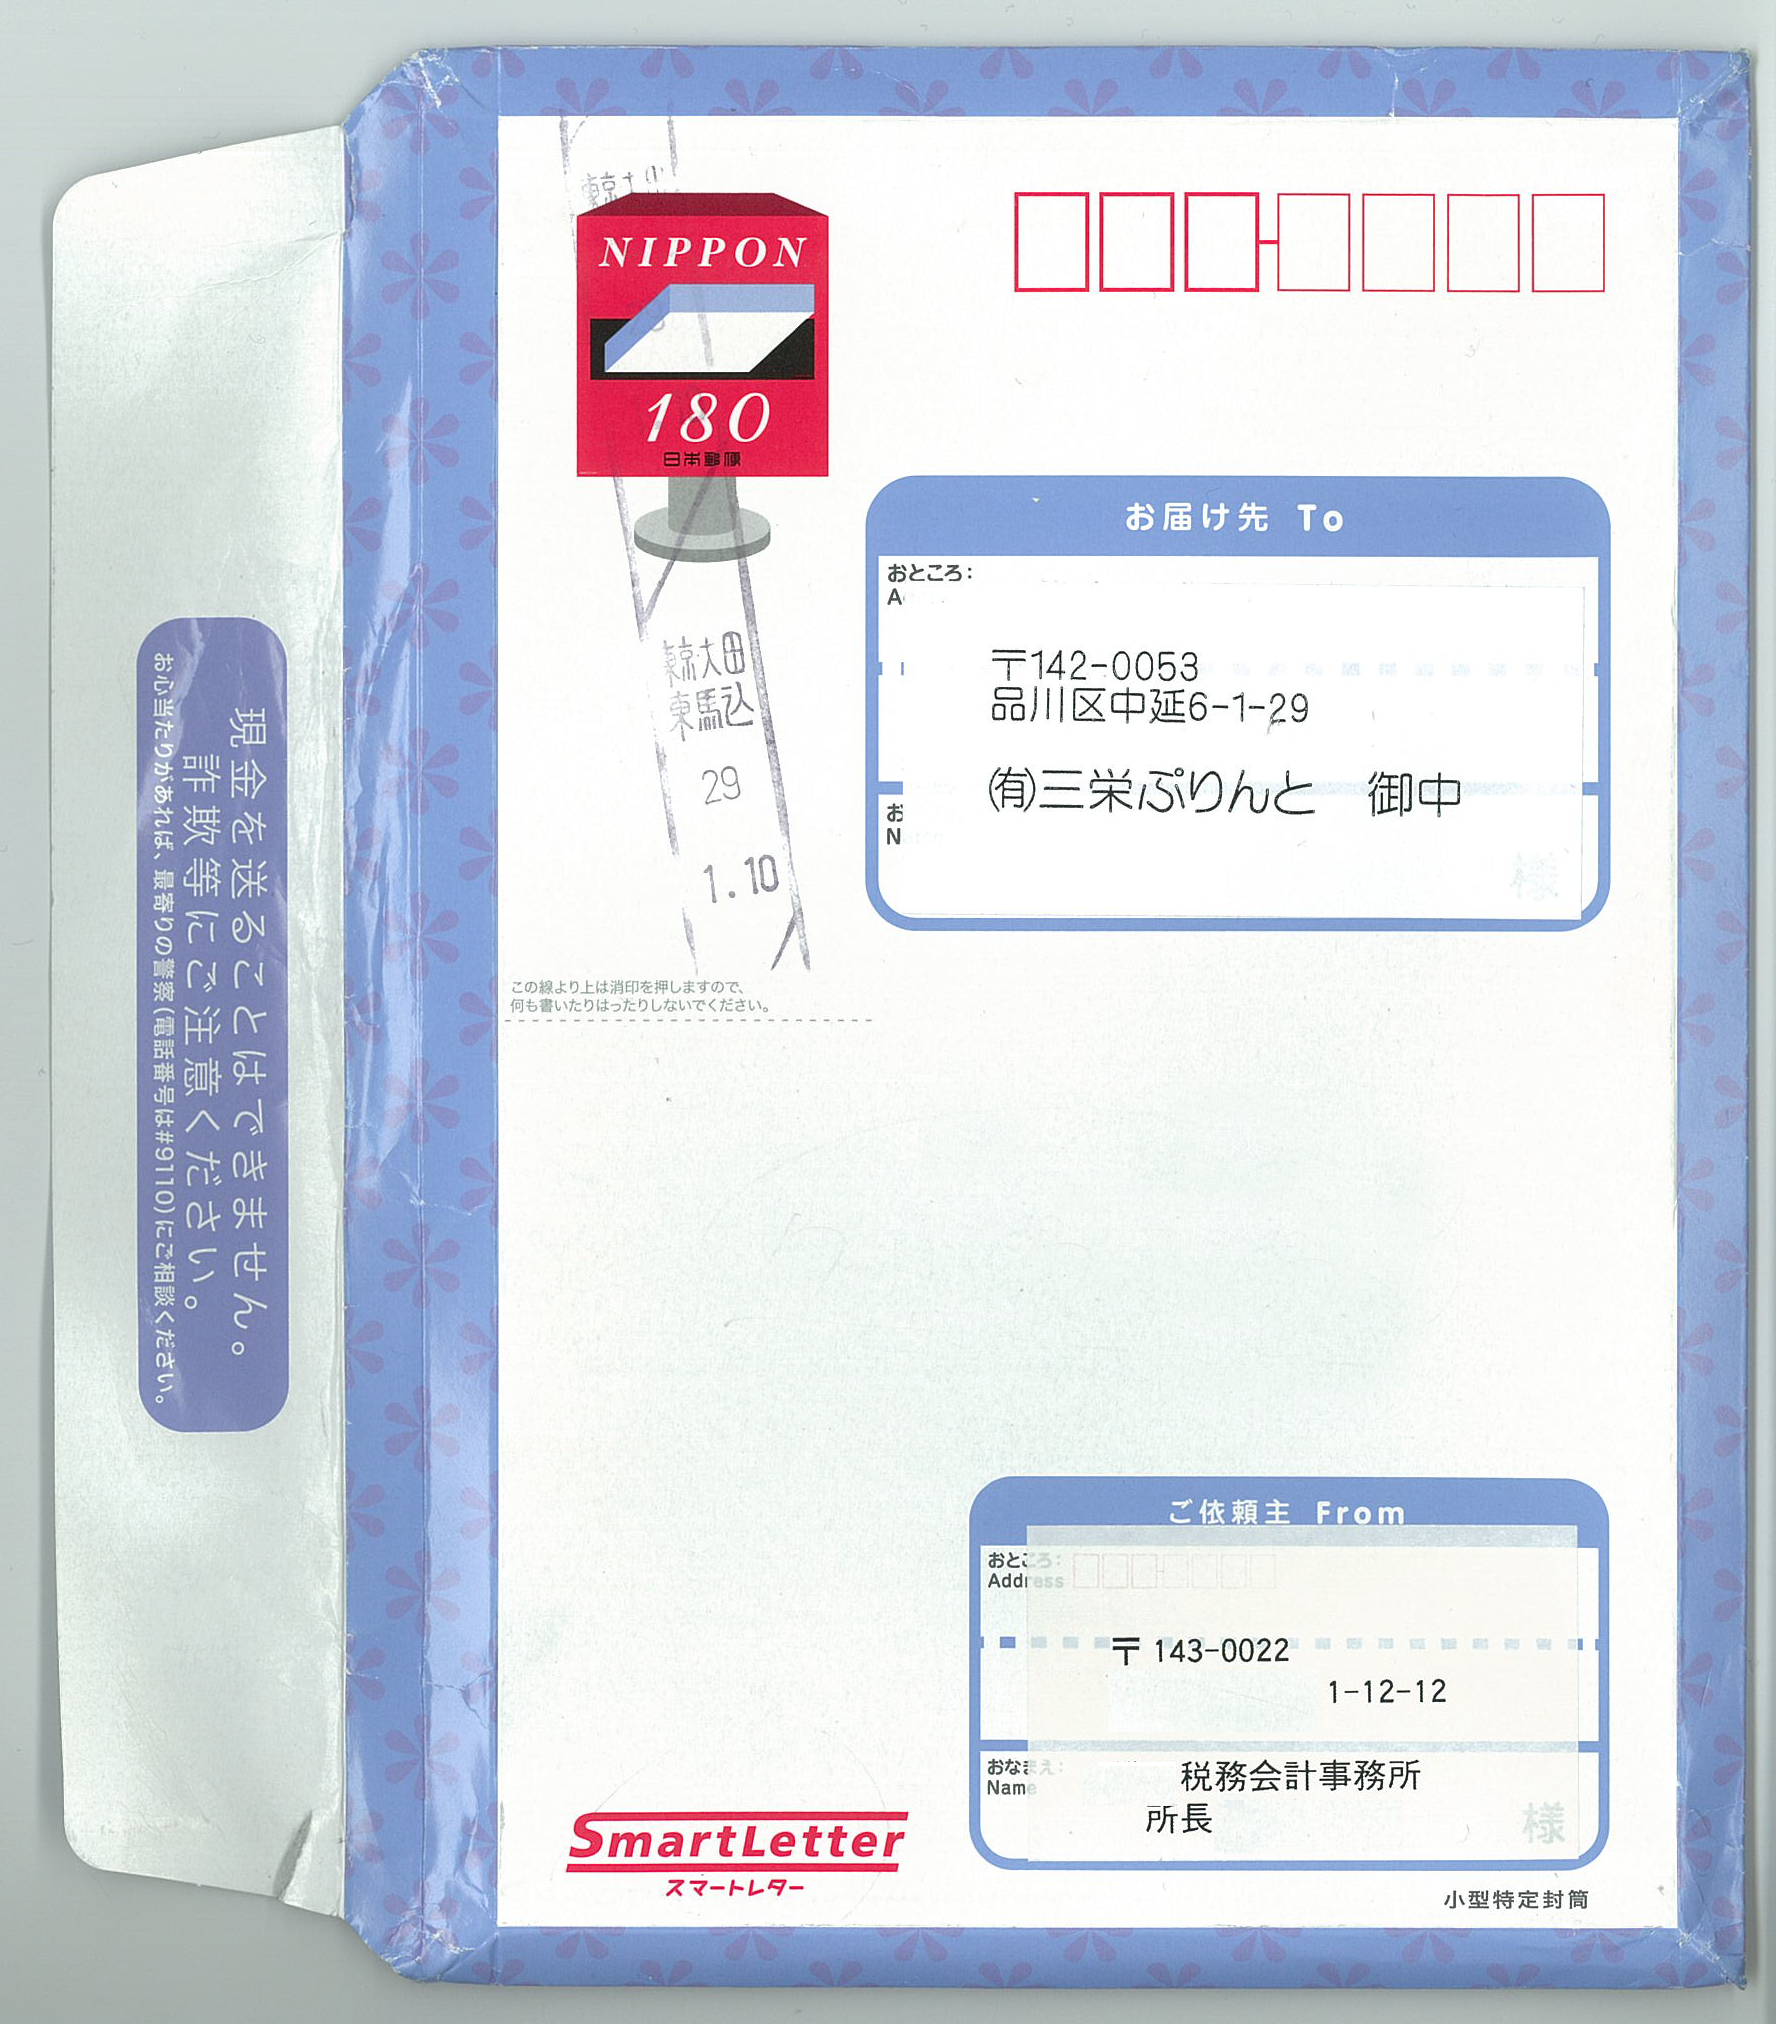 日本郵便 封筒レターパック スマートレター180円 新品 - 2